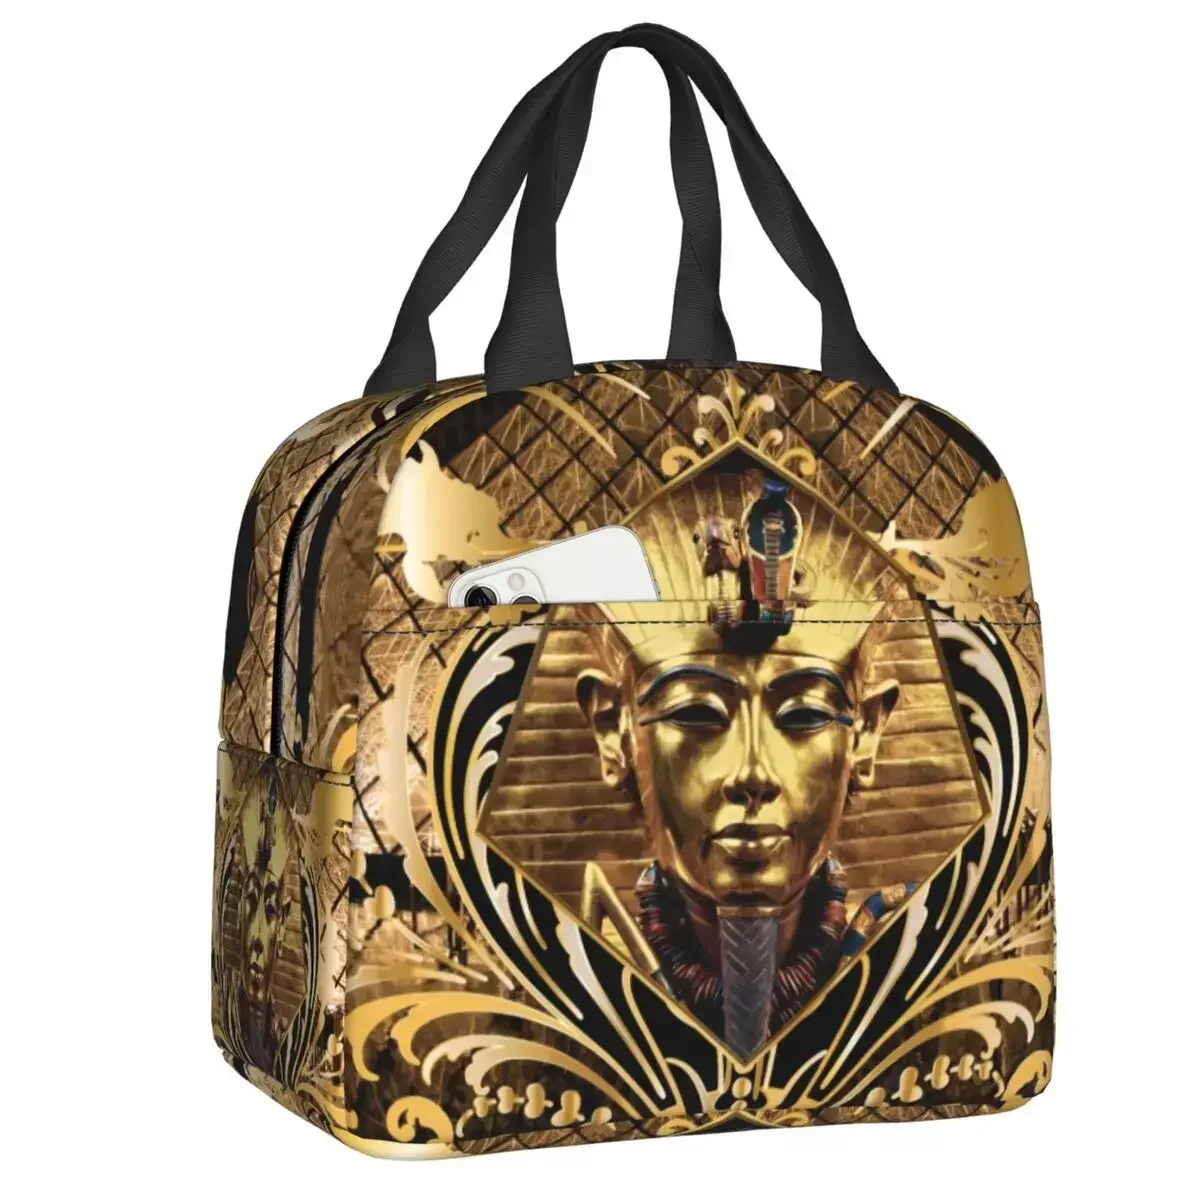 

Золотистый Ланч-бокс с изображением старого бога египта, Фараона, короля итута, Женский Ланч-бокс с египетским мифом, Термоизолированный Ланч-бокс для офиса